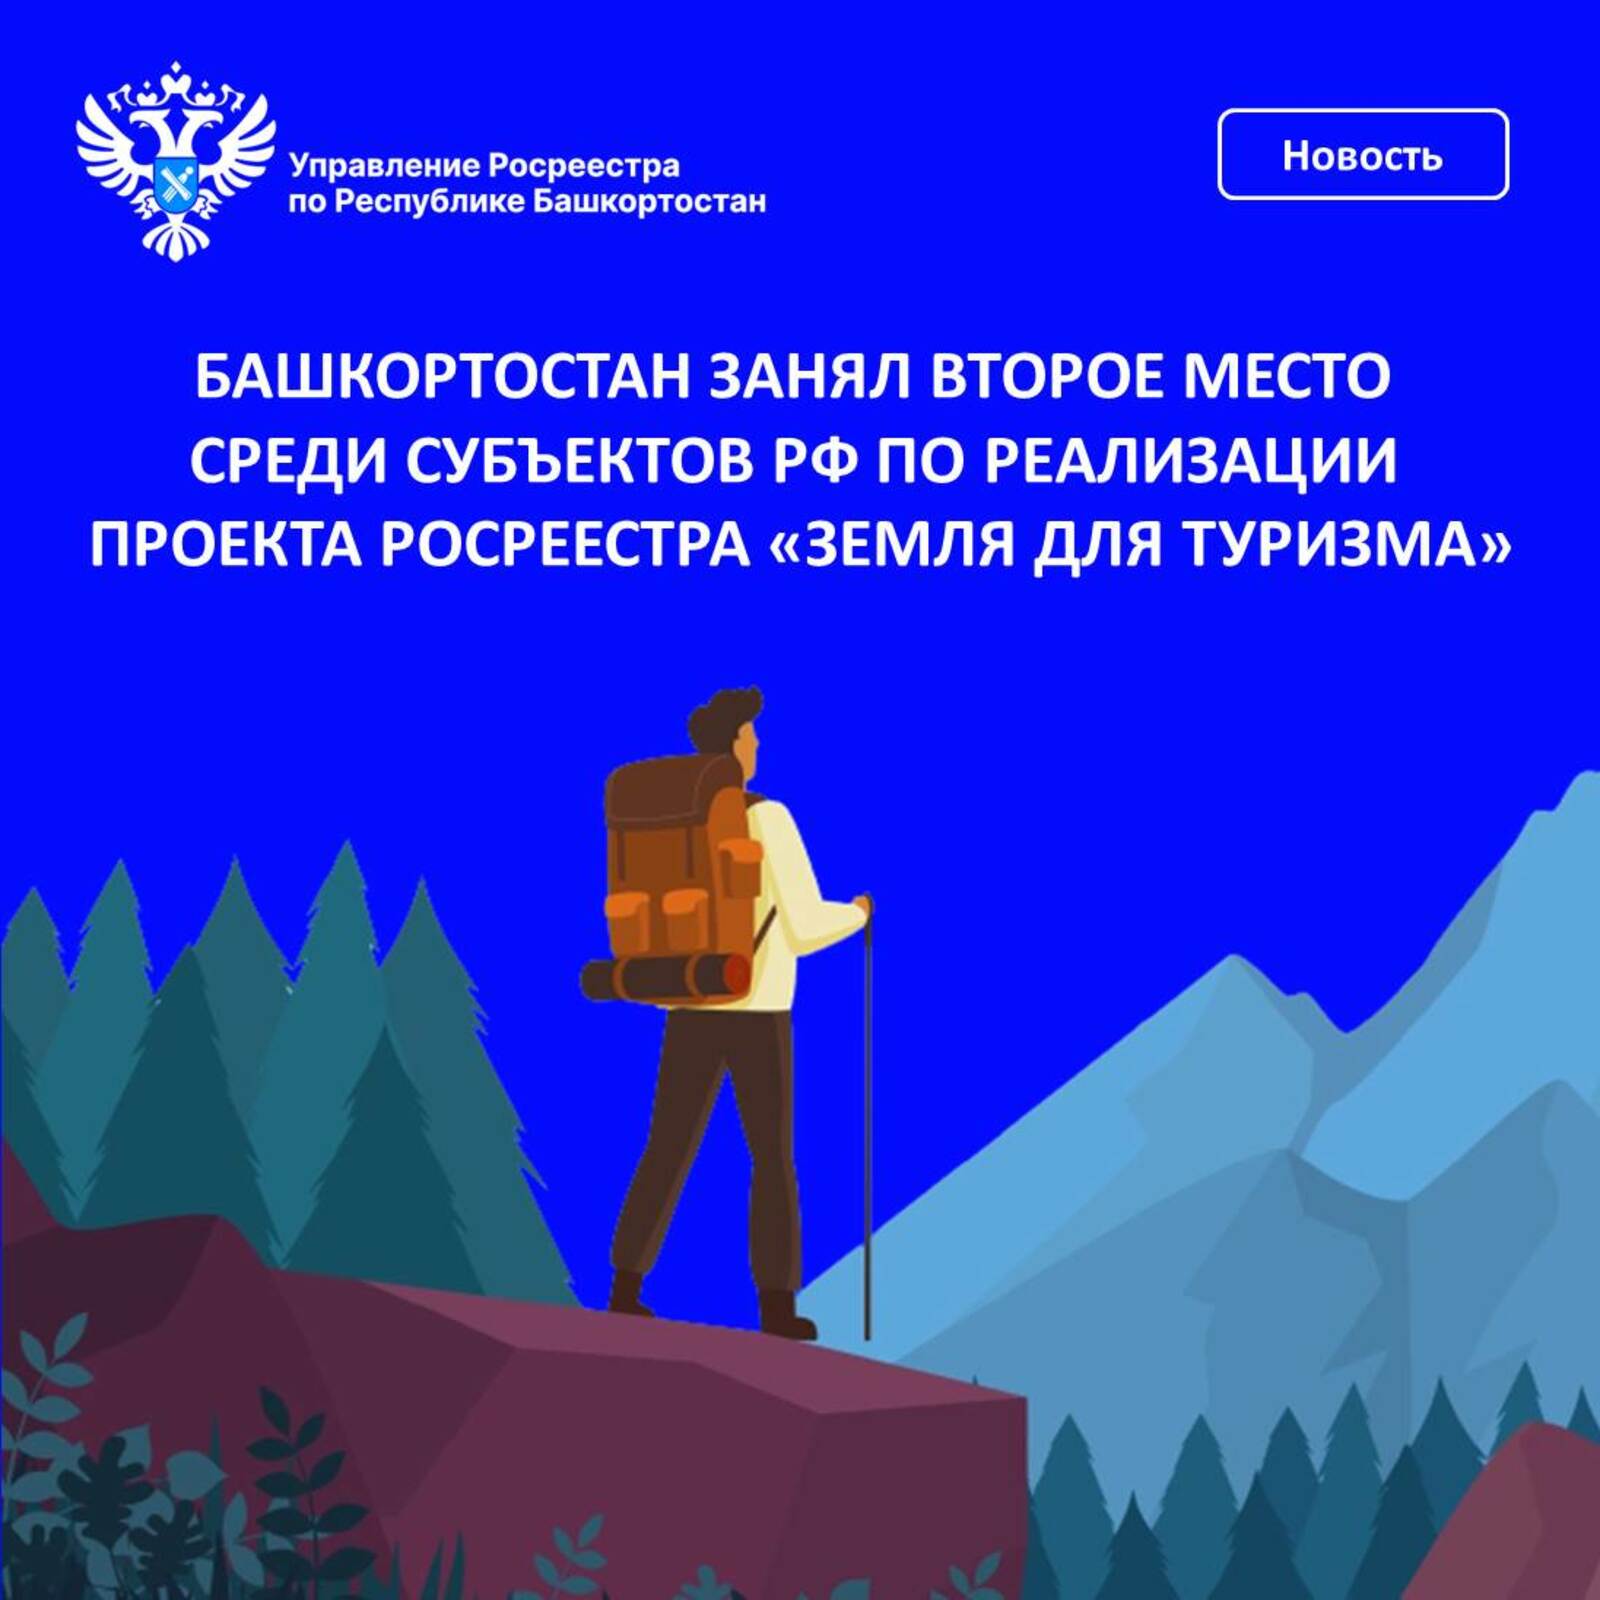 Башкортостан занял второе место среди субъектов РФ по реализации проекта Росреестра «Земля для туризма»